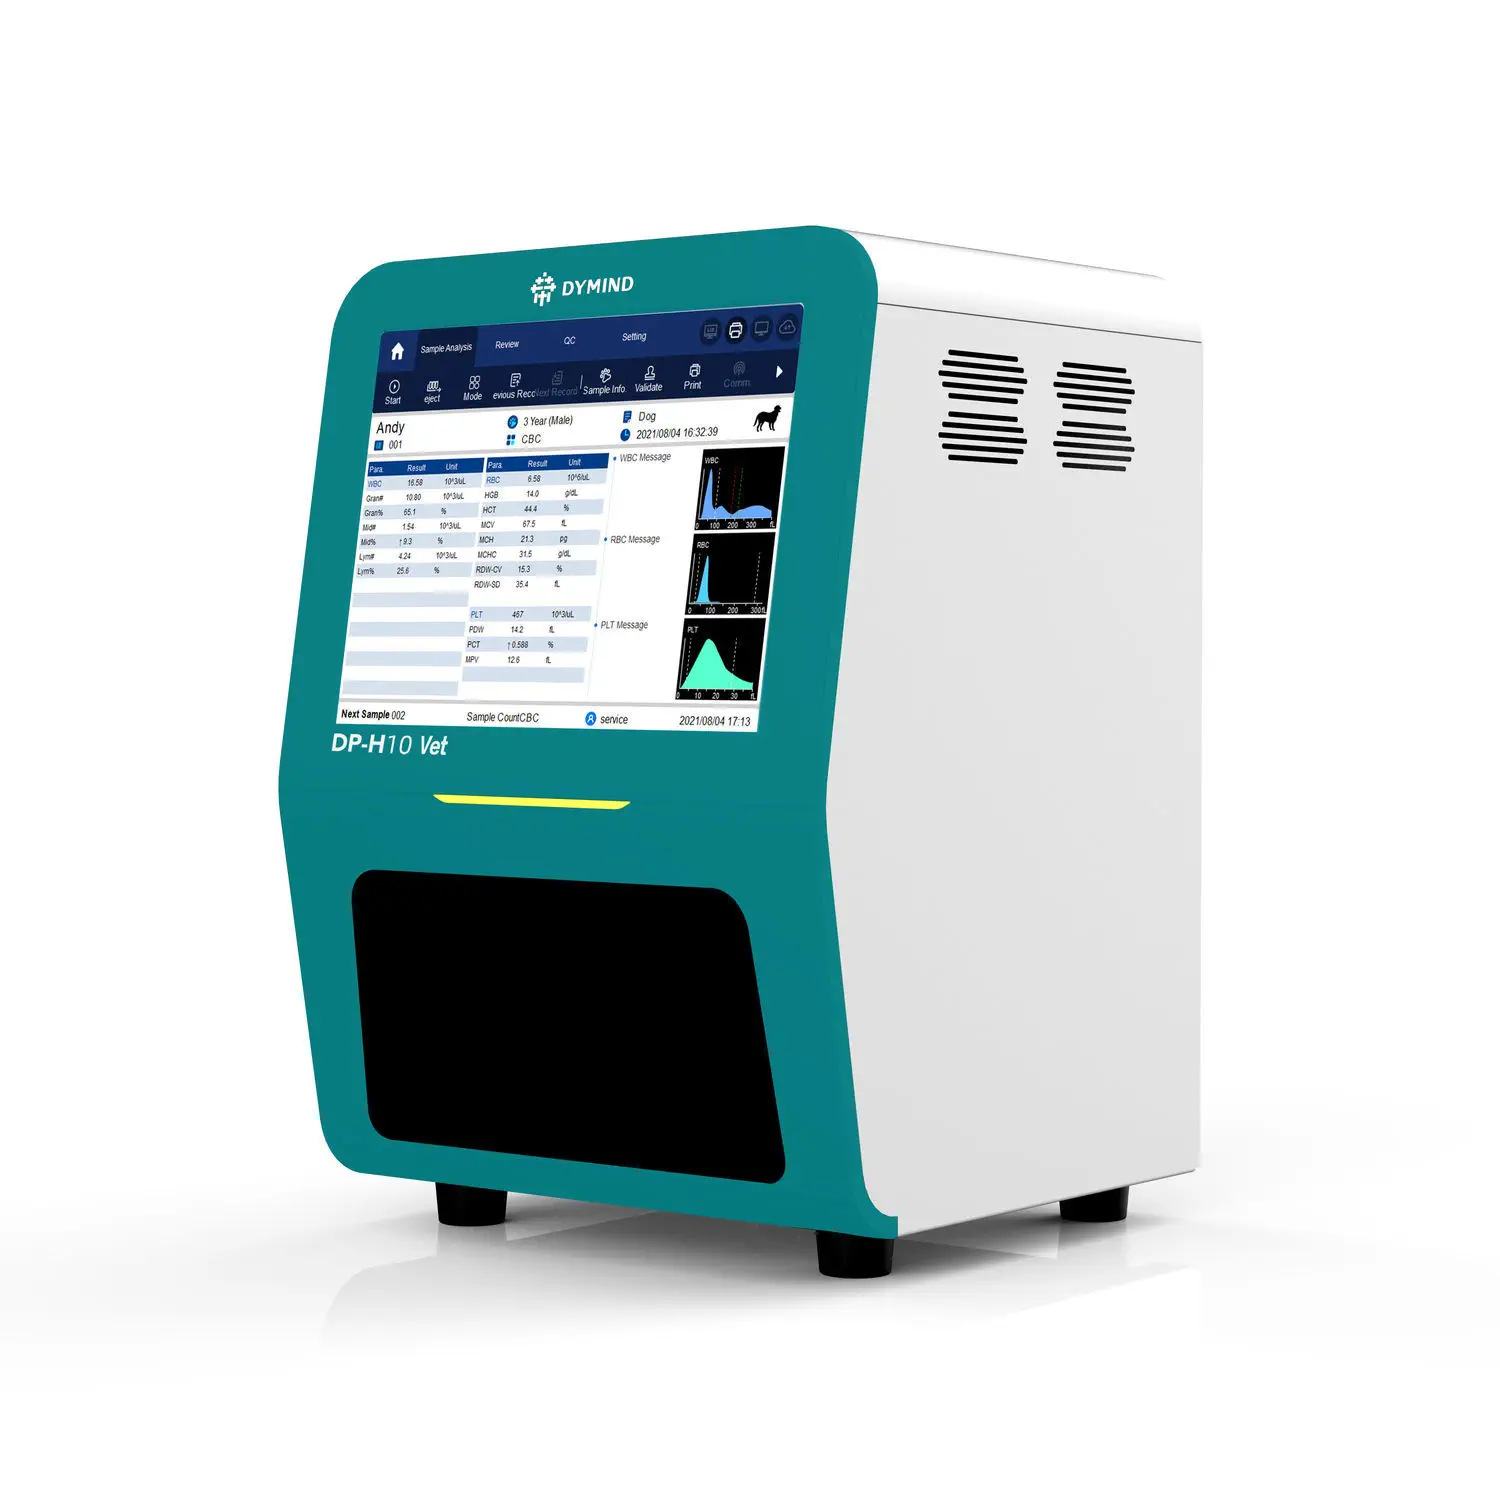 เครื่องตรวจวิเคราะห์ทางห้องปฏิบัติการโลหิตวิทยาสำหรับสัตว์ Veterinary hematology analyzer DP-H10 VET  Dymind